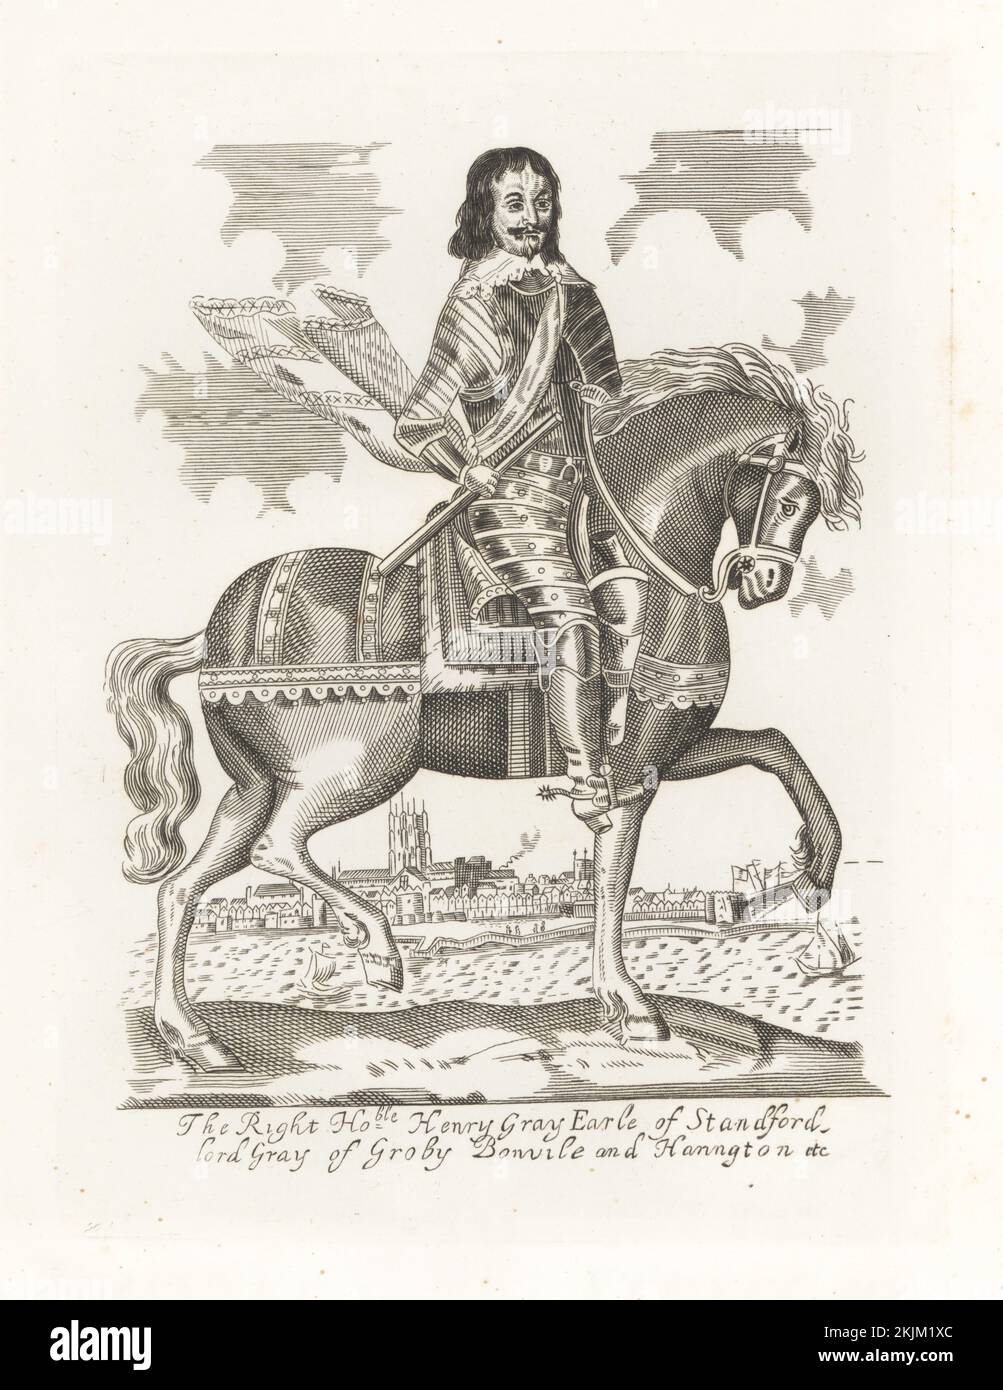 Henry Gray, 1st comte de Stamford, c. 1599-1673. Noble anglais et chef militaire. Le général de la tête ronde a été battu au siège d'Exeter. Vignette de la cathédrale d'Exeter et de l'exe de la rivière. À cheval, en collier de dentelle, costume d'armure de plaque, bottes et éperons. Henry Gray, comte de Standford, seigneur de Groby, Bonvile et Harrington. De l'imprimé équestre unique de Clarendon d'Earl Spenser. Gravure sur plaque de coperplate de la galerie des portraits rares de Samuel Woodburn, composée de plaques originales, George Jones, 102 St Martin's Lane, Londres, 1816. Banque D'Images